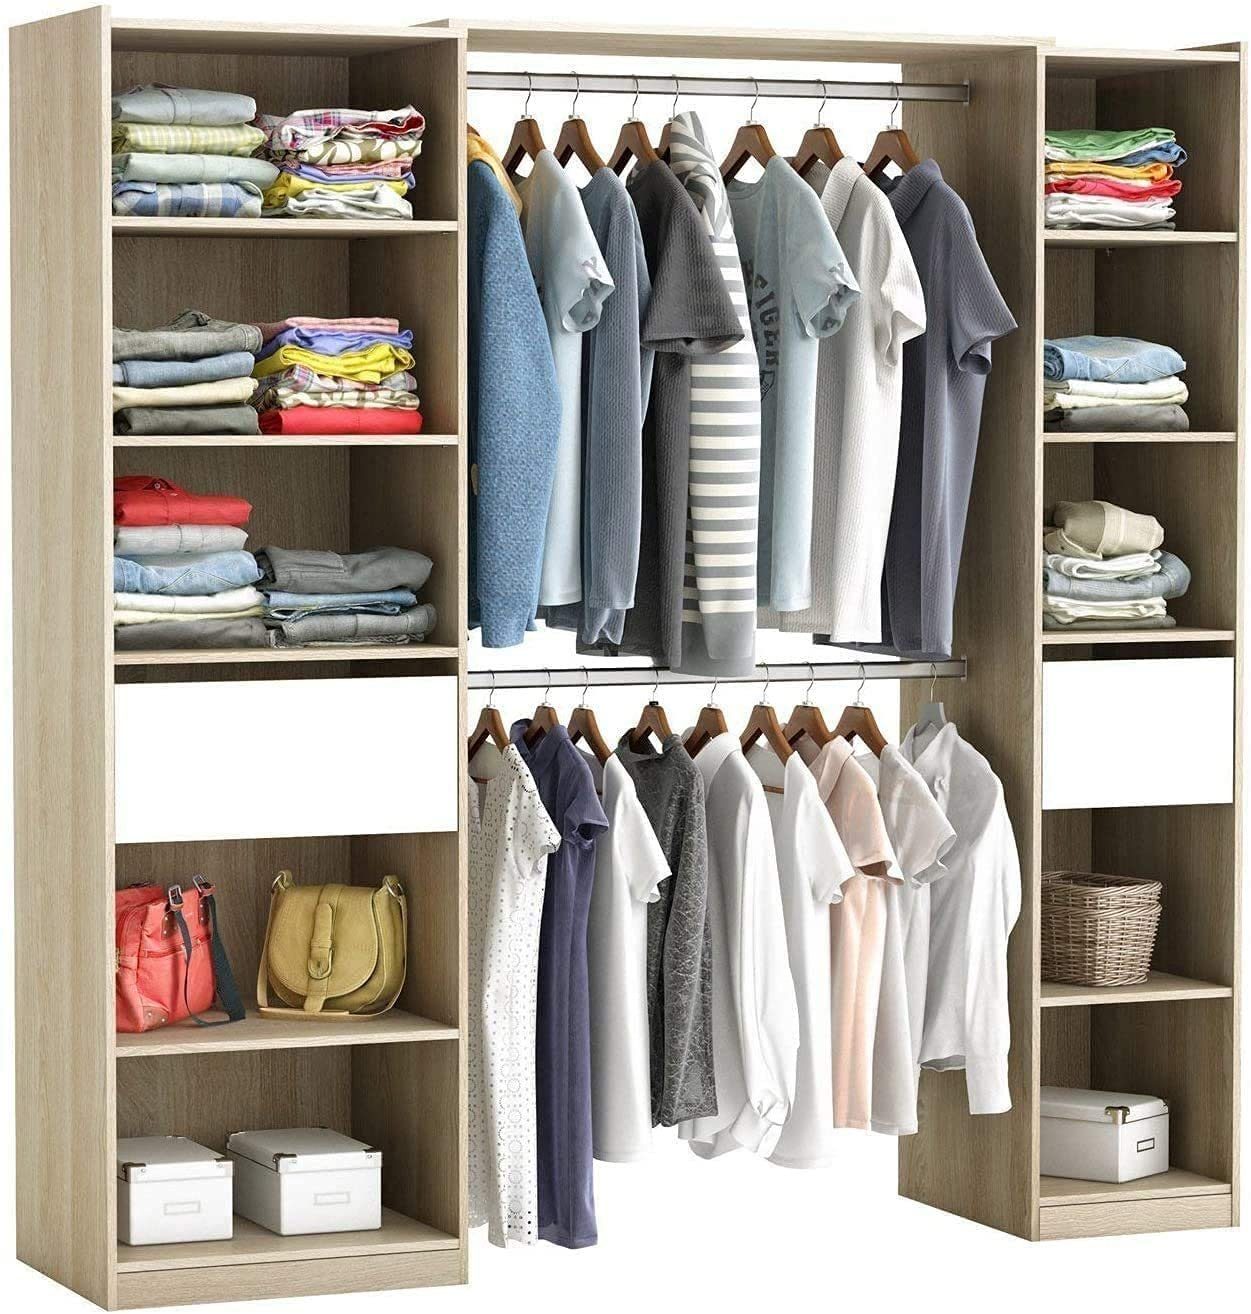 Weiß habeig RIESIGER Kleiderschrank #5077 begehbar offen Garderobe Schrank Regal Schublade